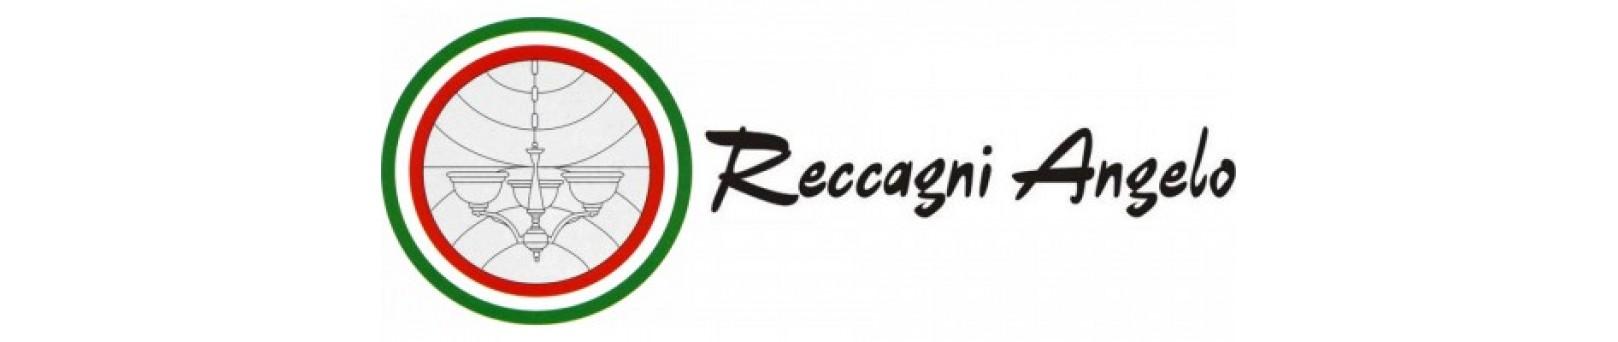 Снижение цен на 12% на светильники Reccagni Angelo (Италия)